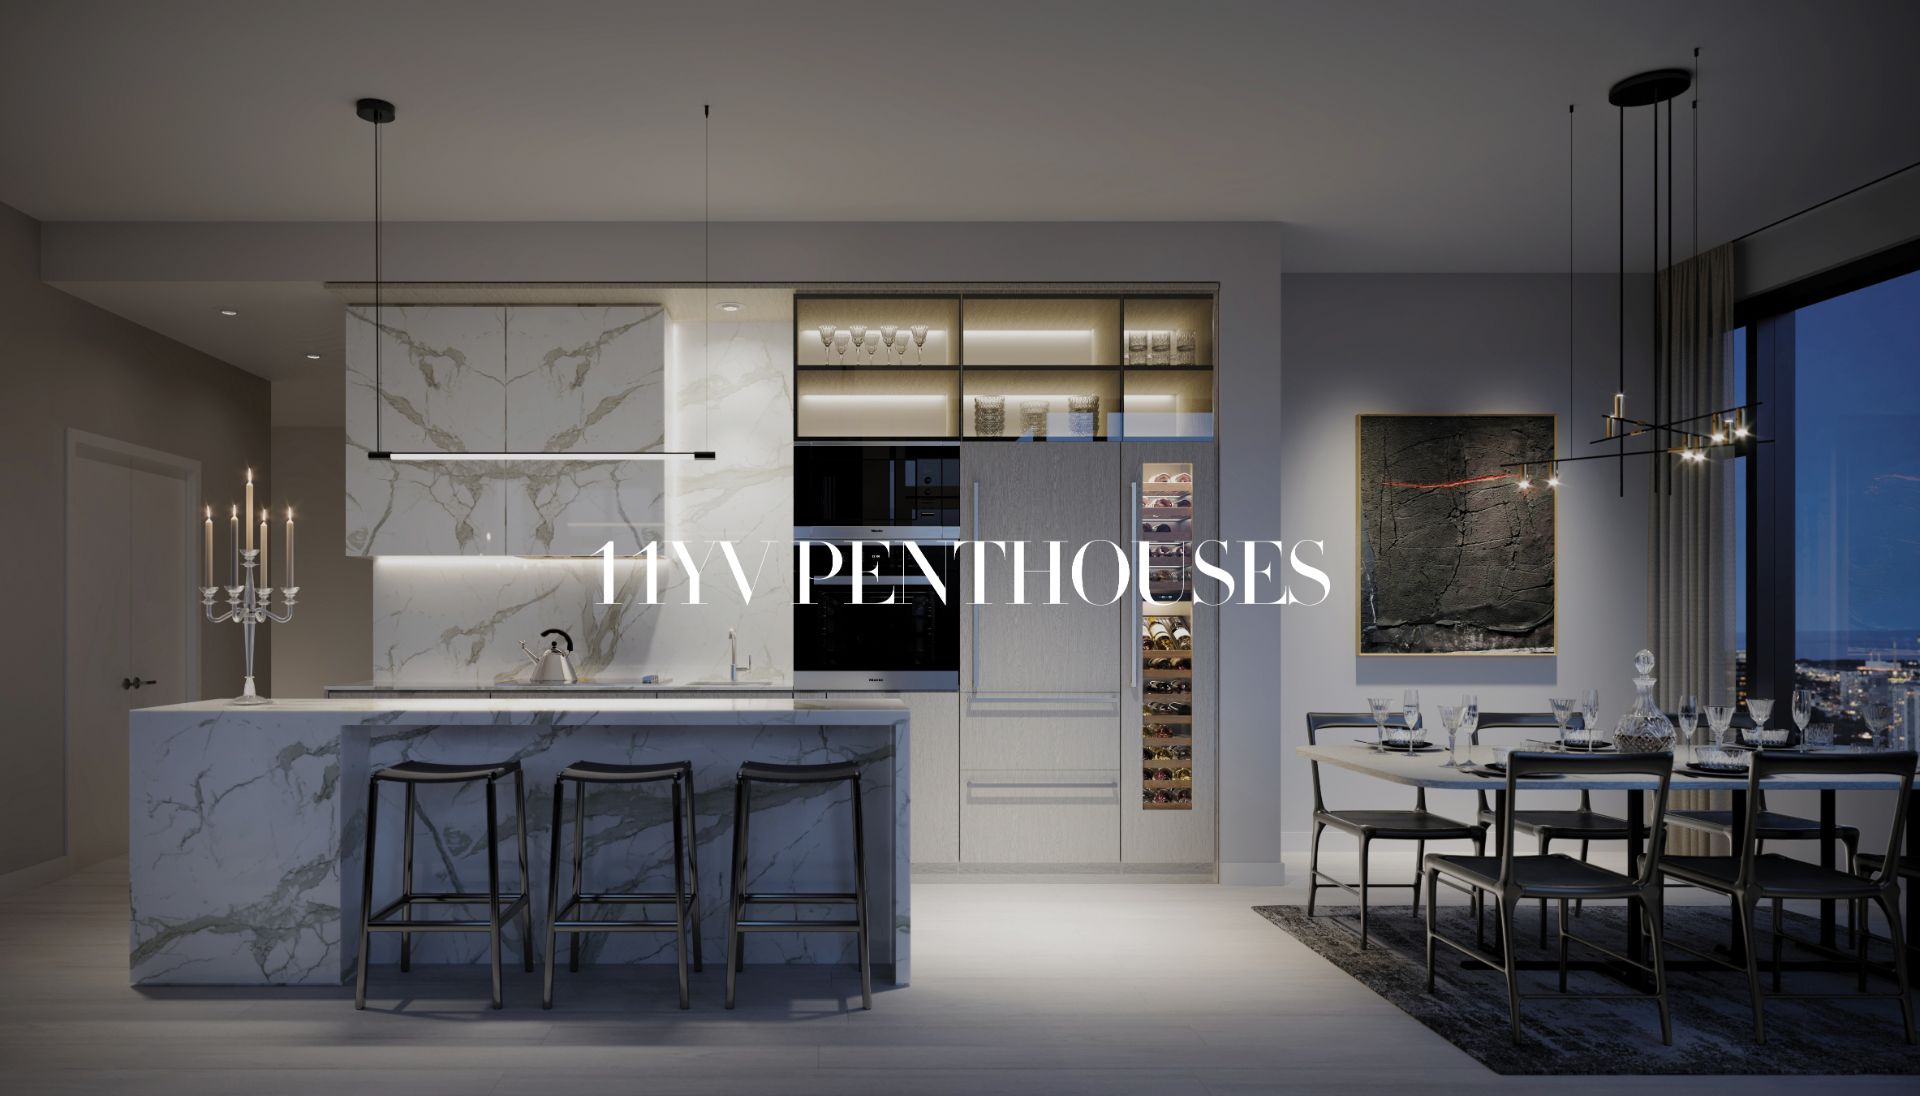 11YV-Penthouse-Carousel-image